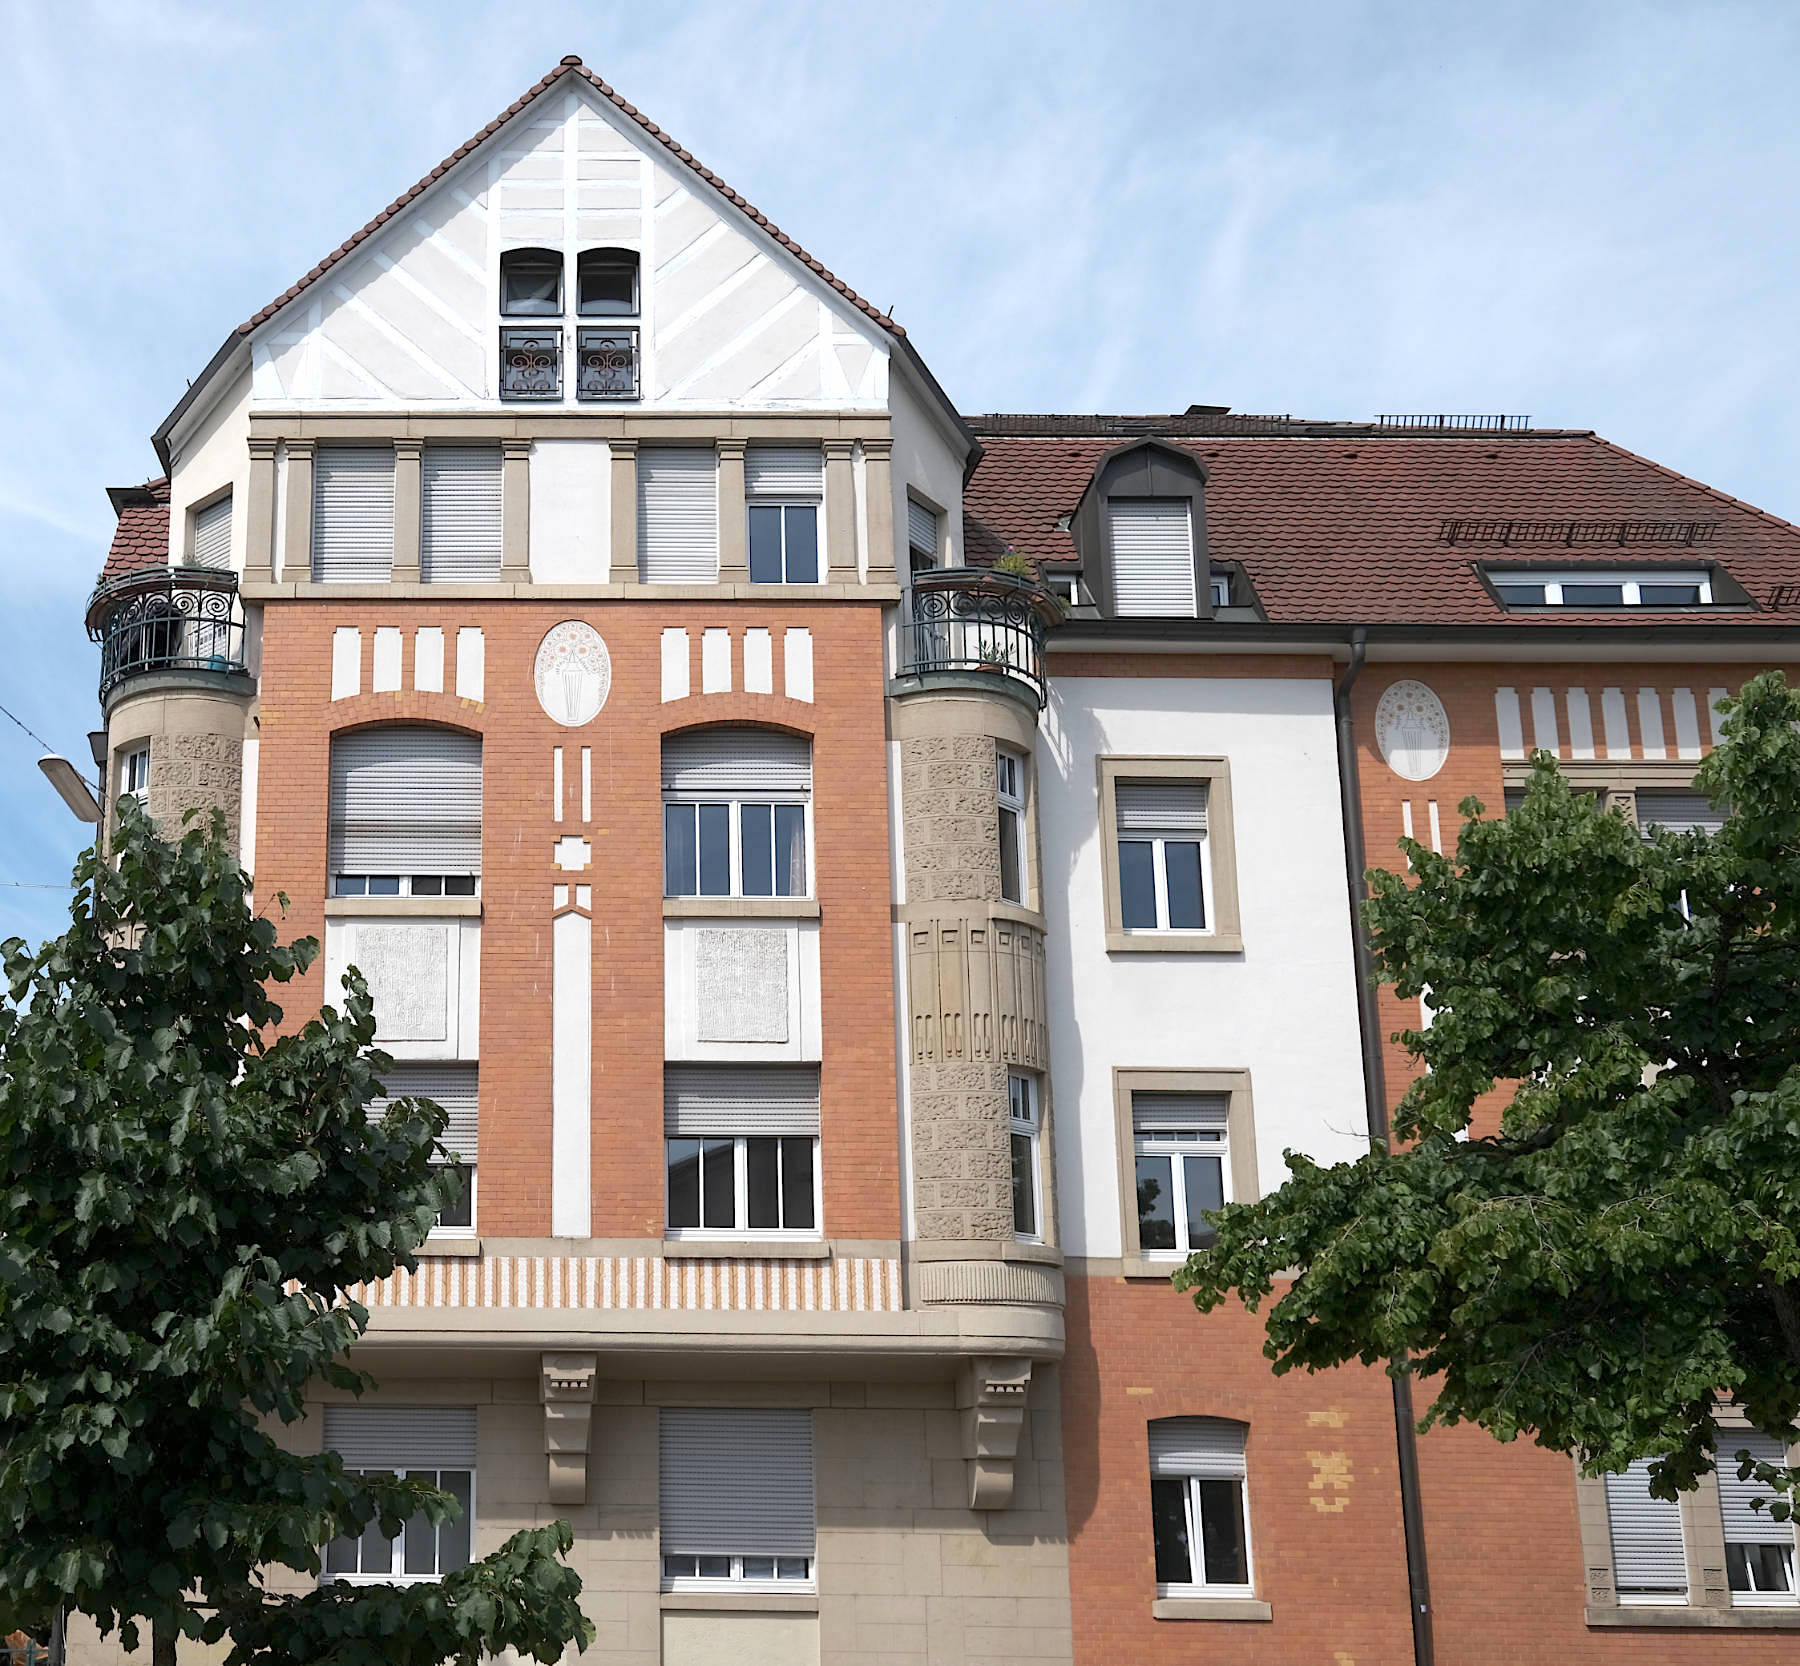 Naturstein in Kombination mit kontrastierenden Putzflächen in orangefarbenem Rot prägen häufig die Fassaden, wie dieses Wohnhaus in der Yorckstraße 49 von Herman Bastel (1911).